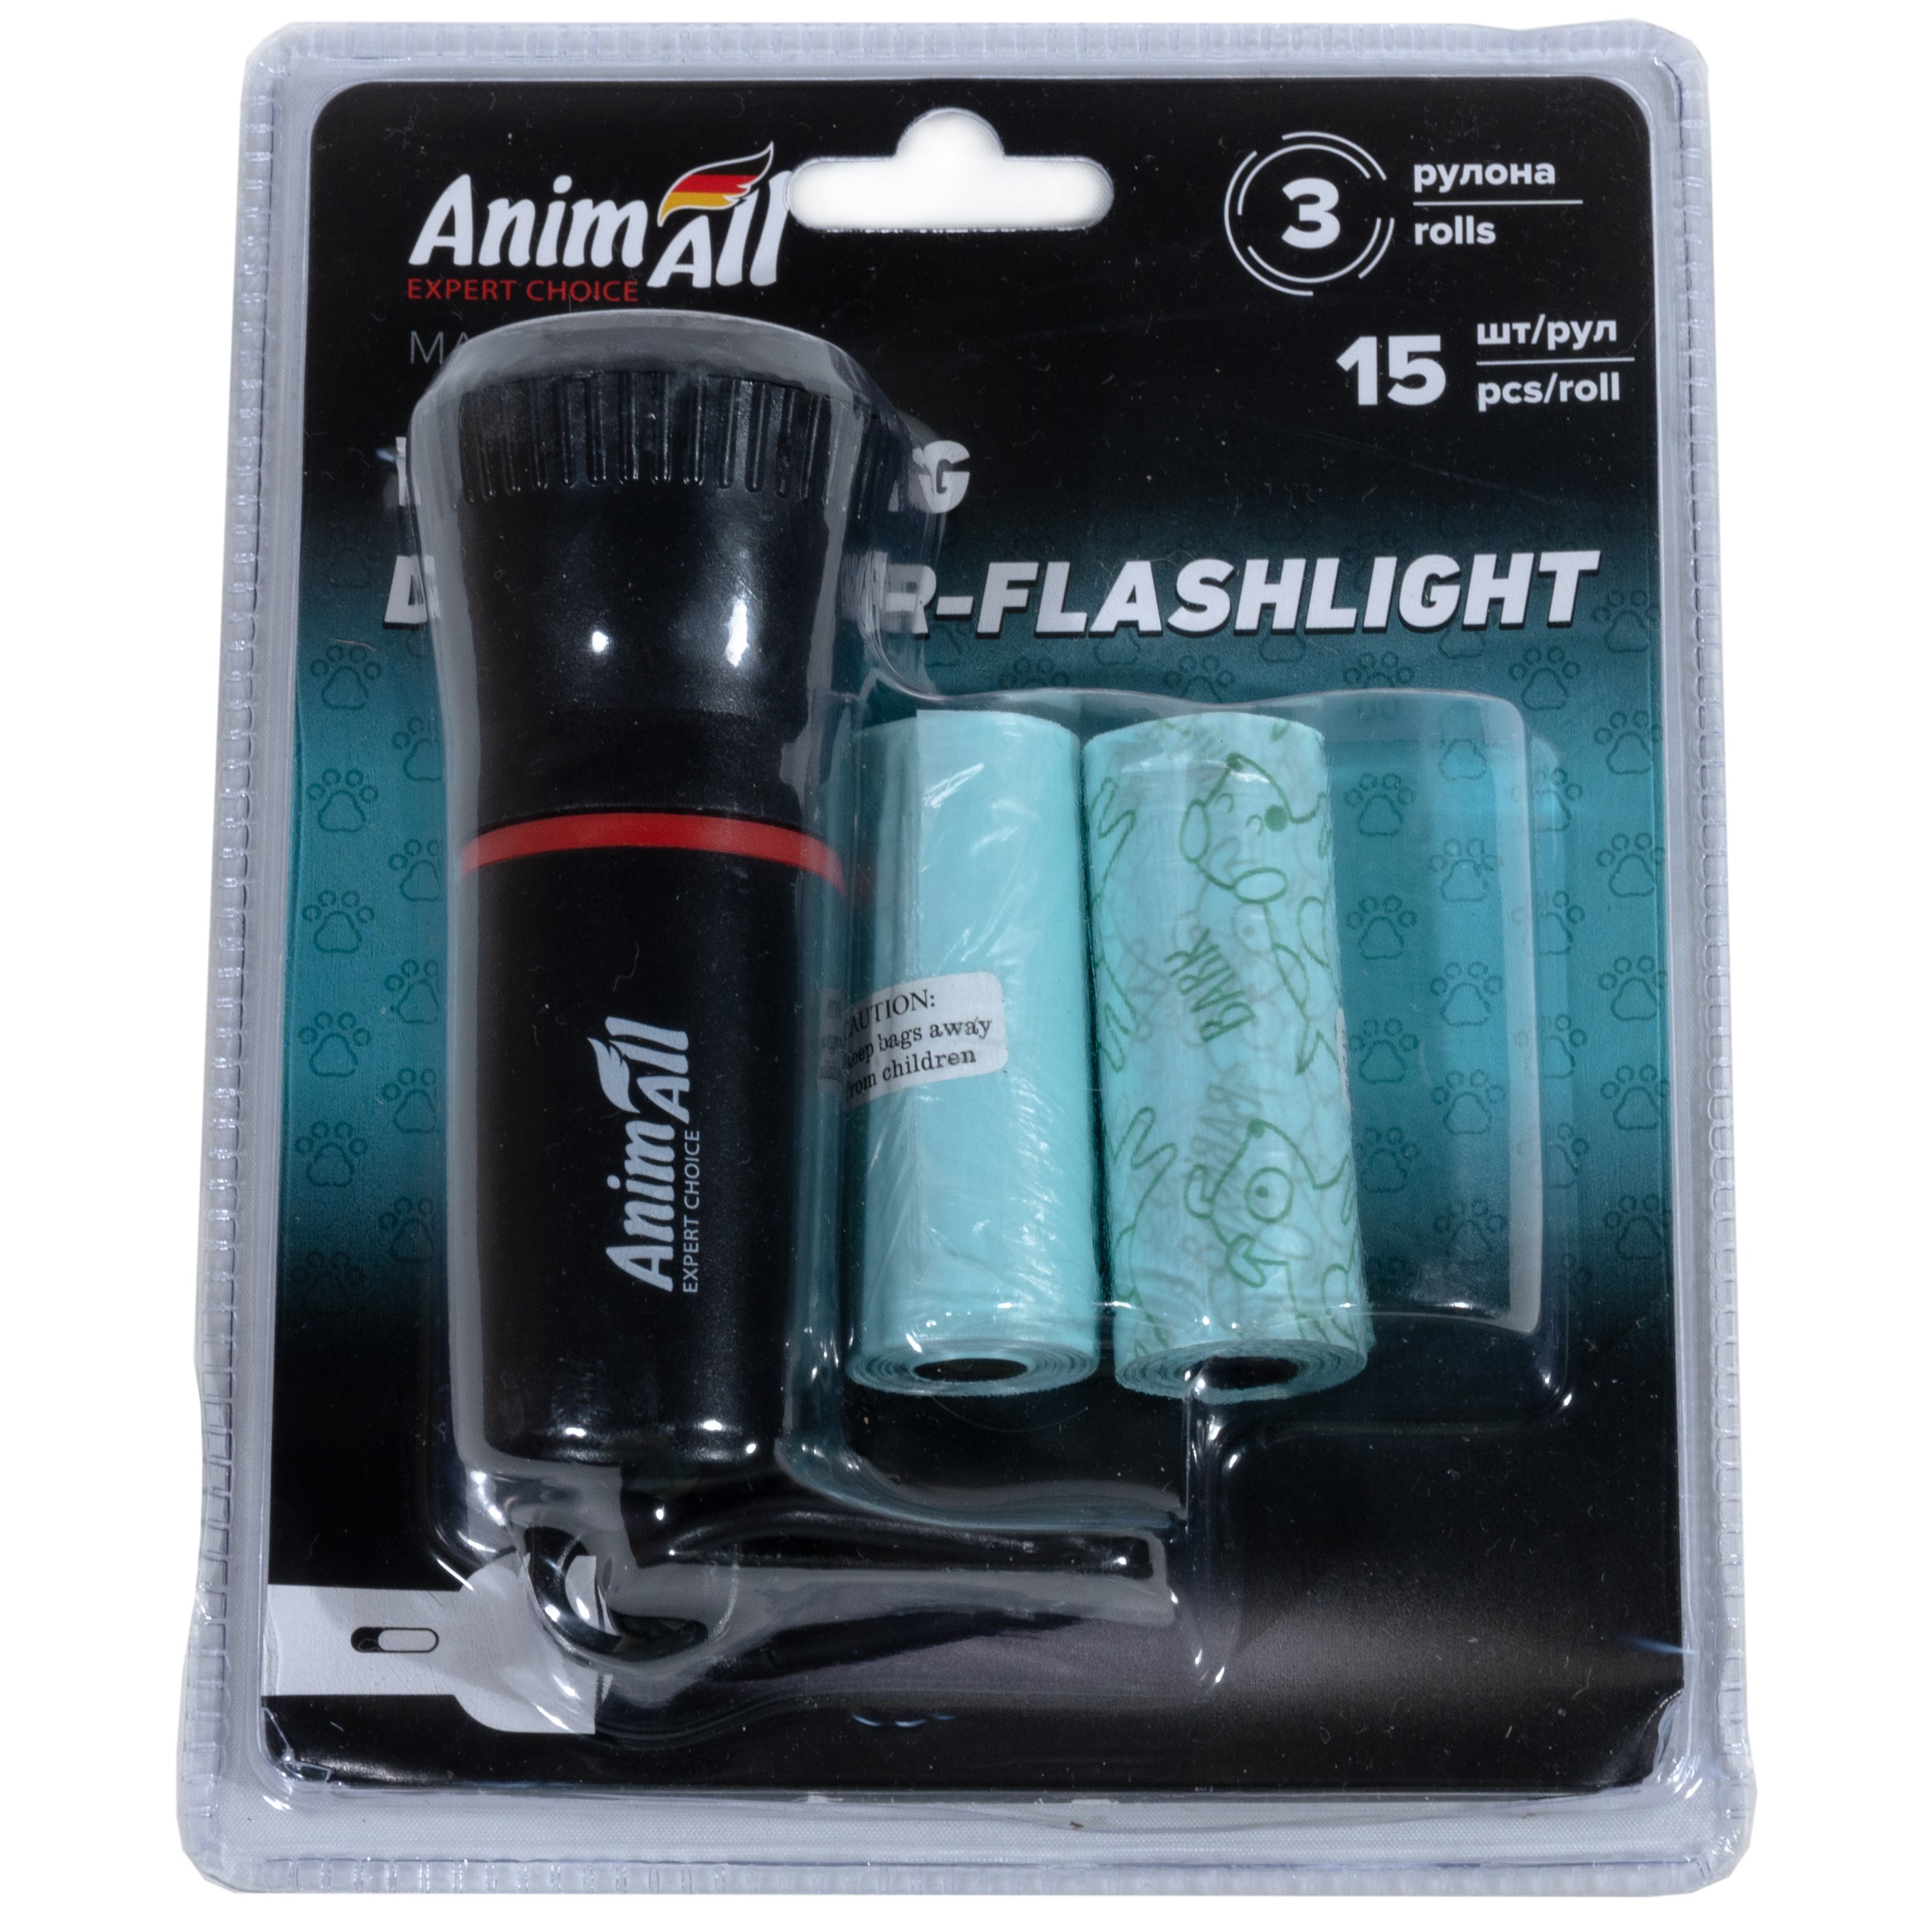 Диспенсер-ліхтарик AnimAll зі змінними пакетами 3 рулона по 15 шт. чорний з червоним - фото 3